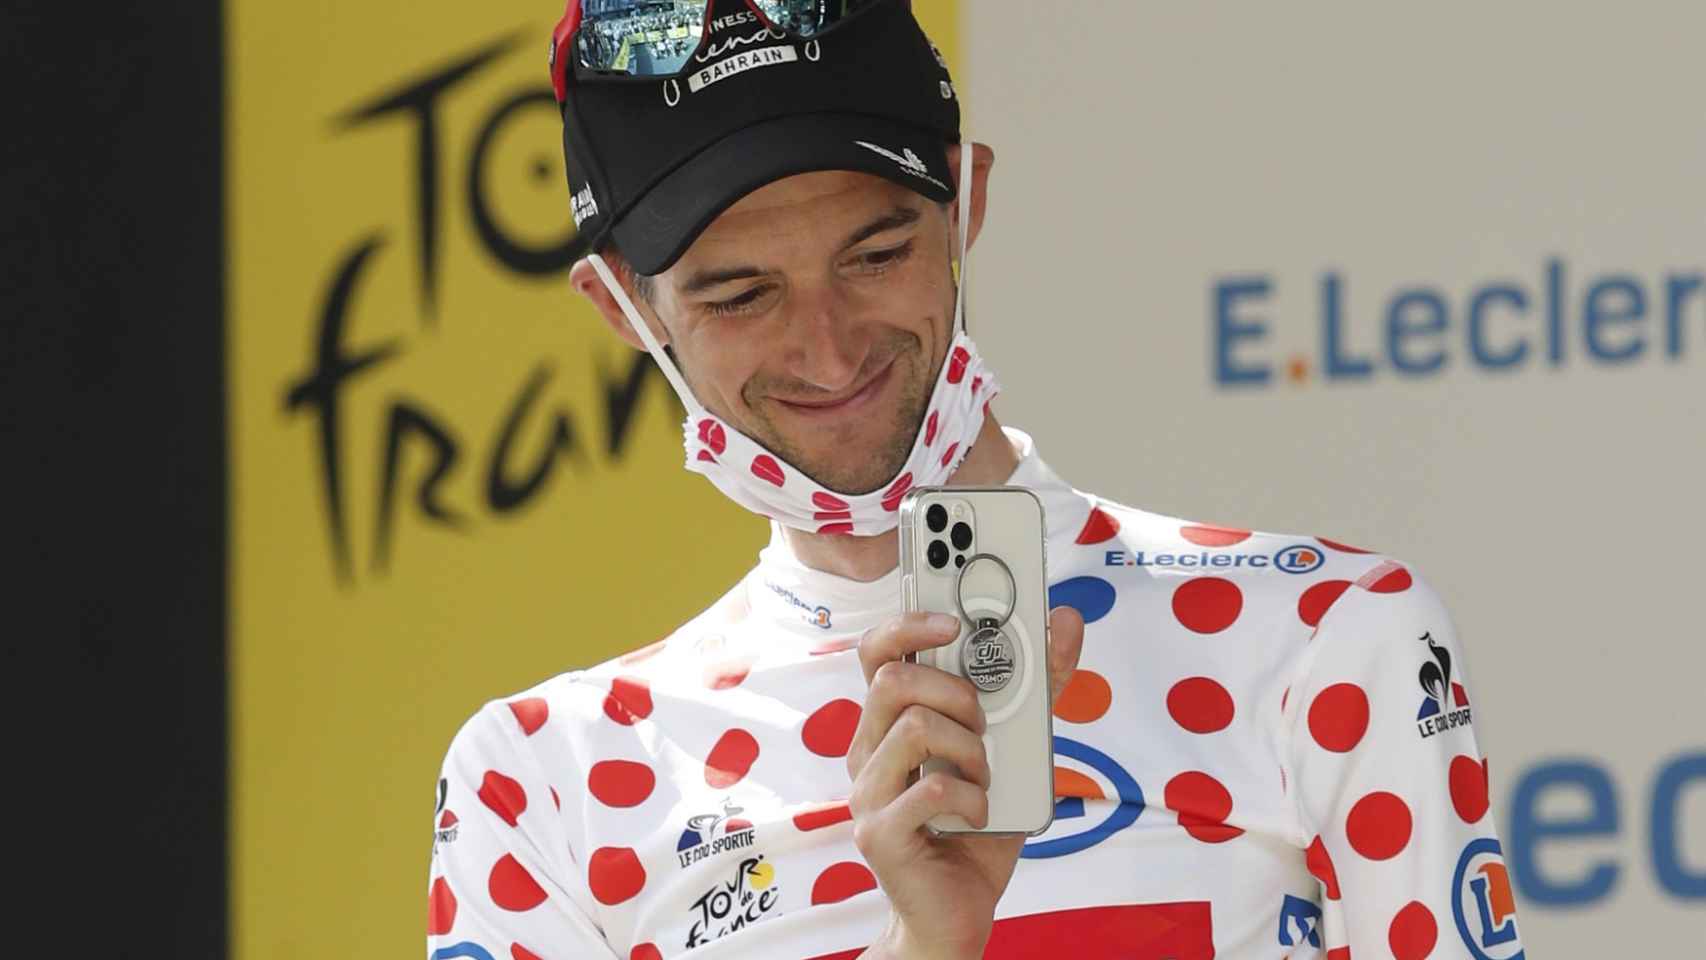 Wouter Poels con el maillot de lunares del Tour de Francia